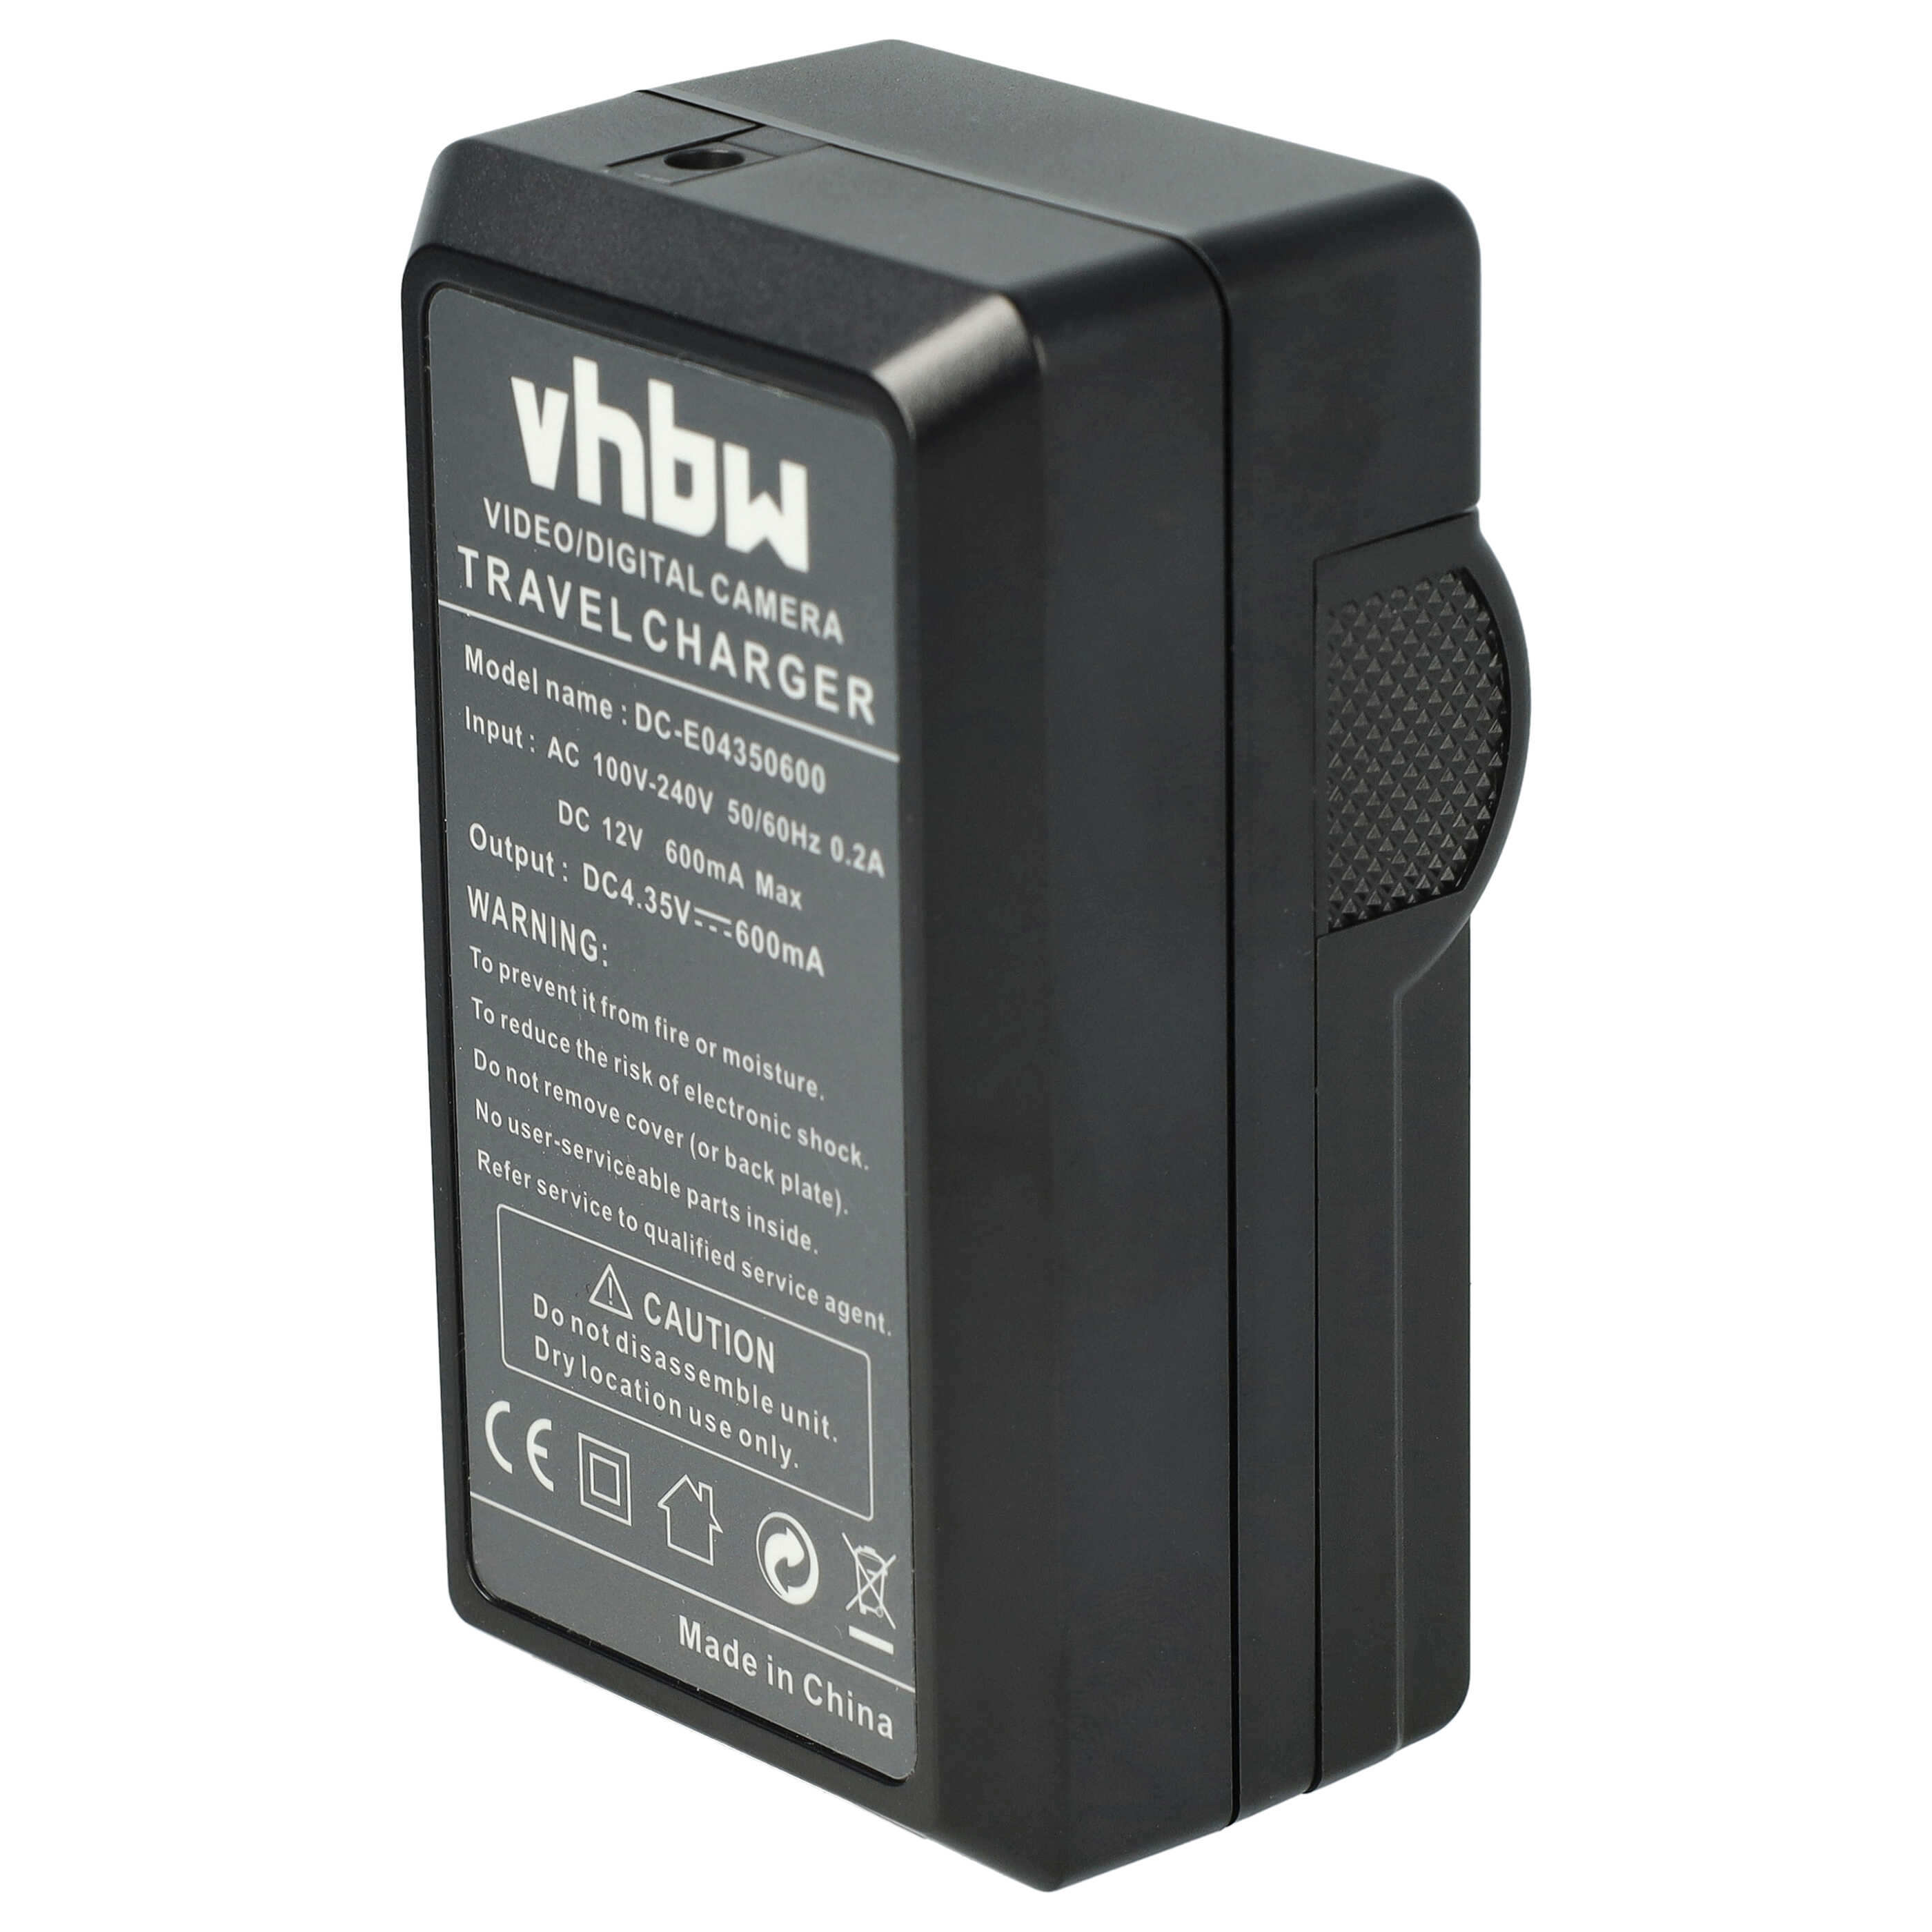 Caricabatterie + adattatore da auto per fotocamera Coolpix - 0,6A 4,35V 88,5cm